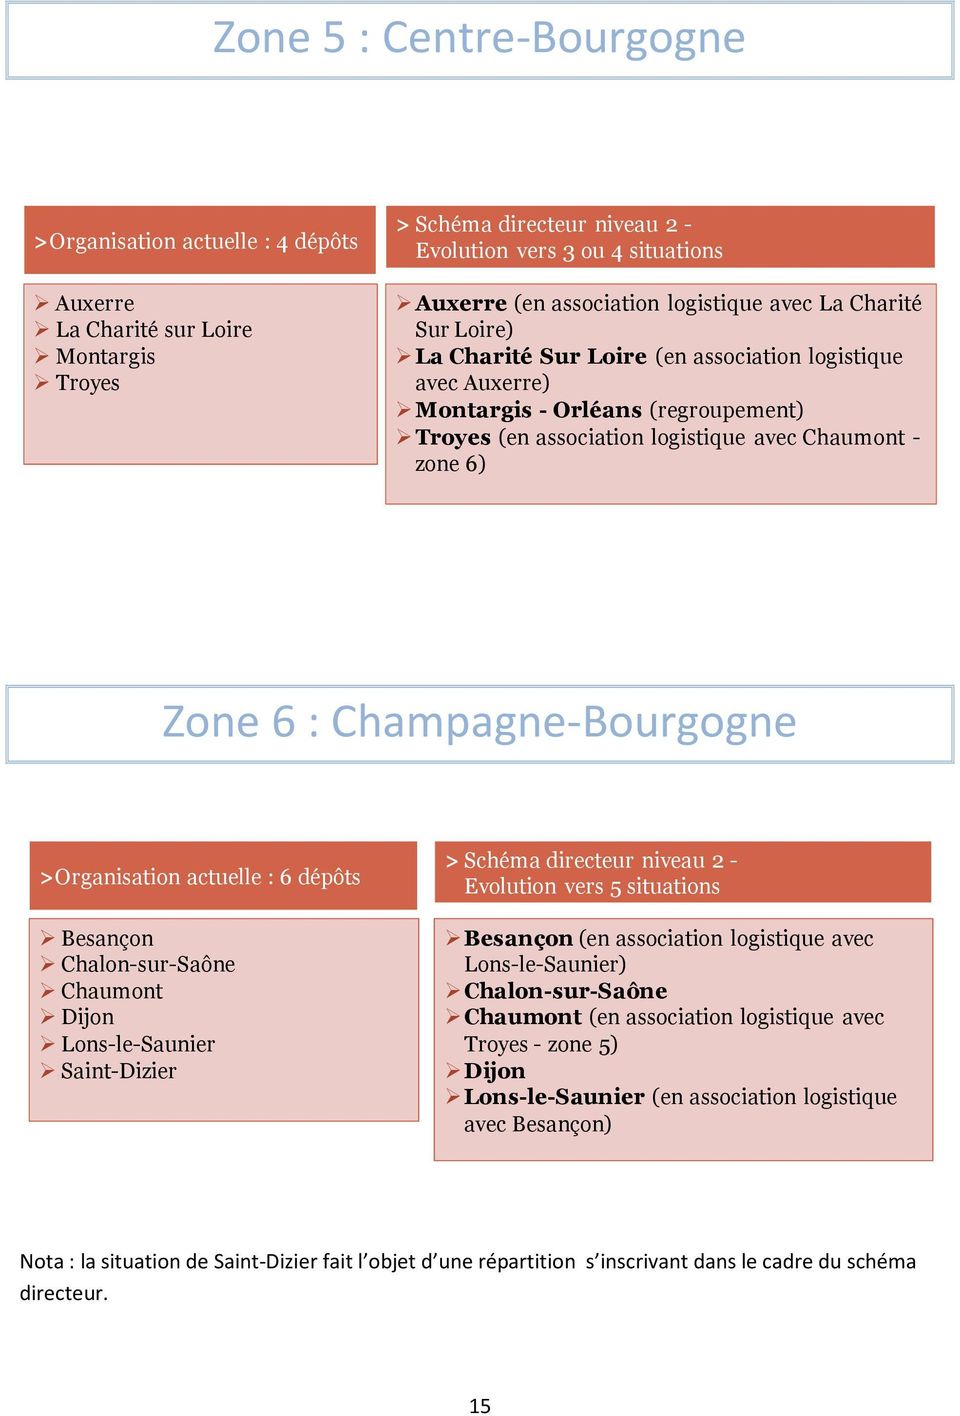 >Organisation actuelle : 6 dépôts Besançon Chalon-sur-Saône Chaumont Dijon Lons-le-Saunier Saint-Dizier Evolution vers 5 situations Besançon (en association logistique avec Lons-le-Saunier)